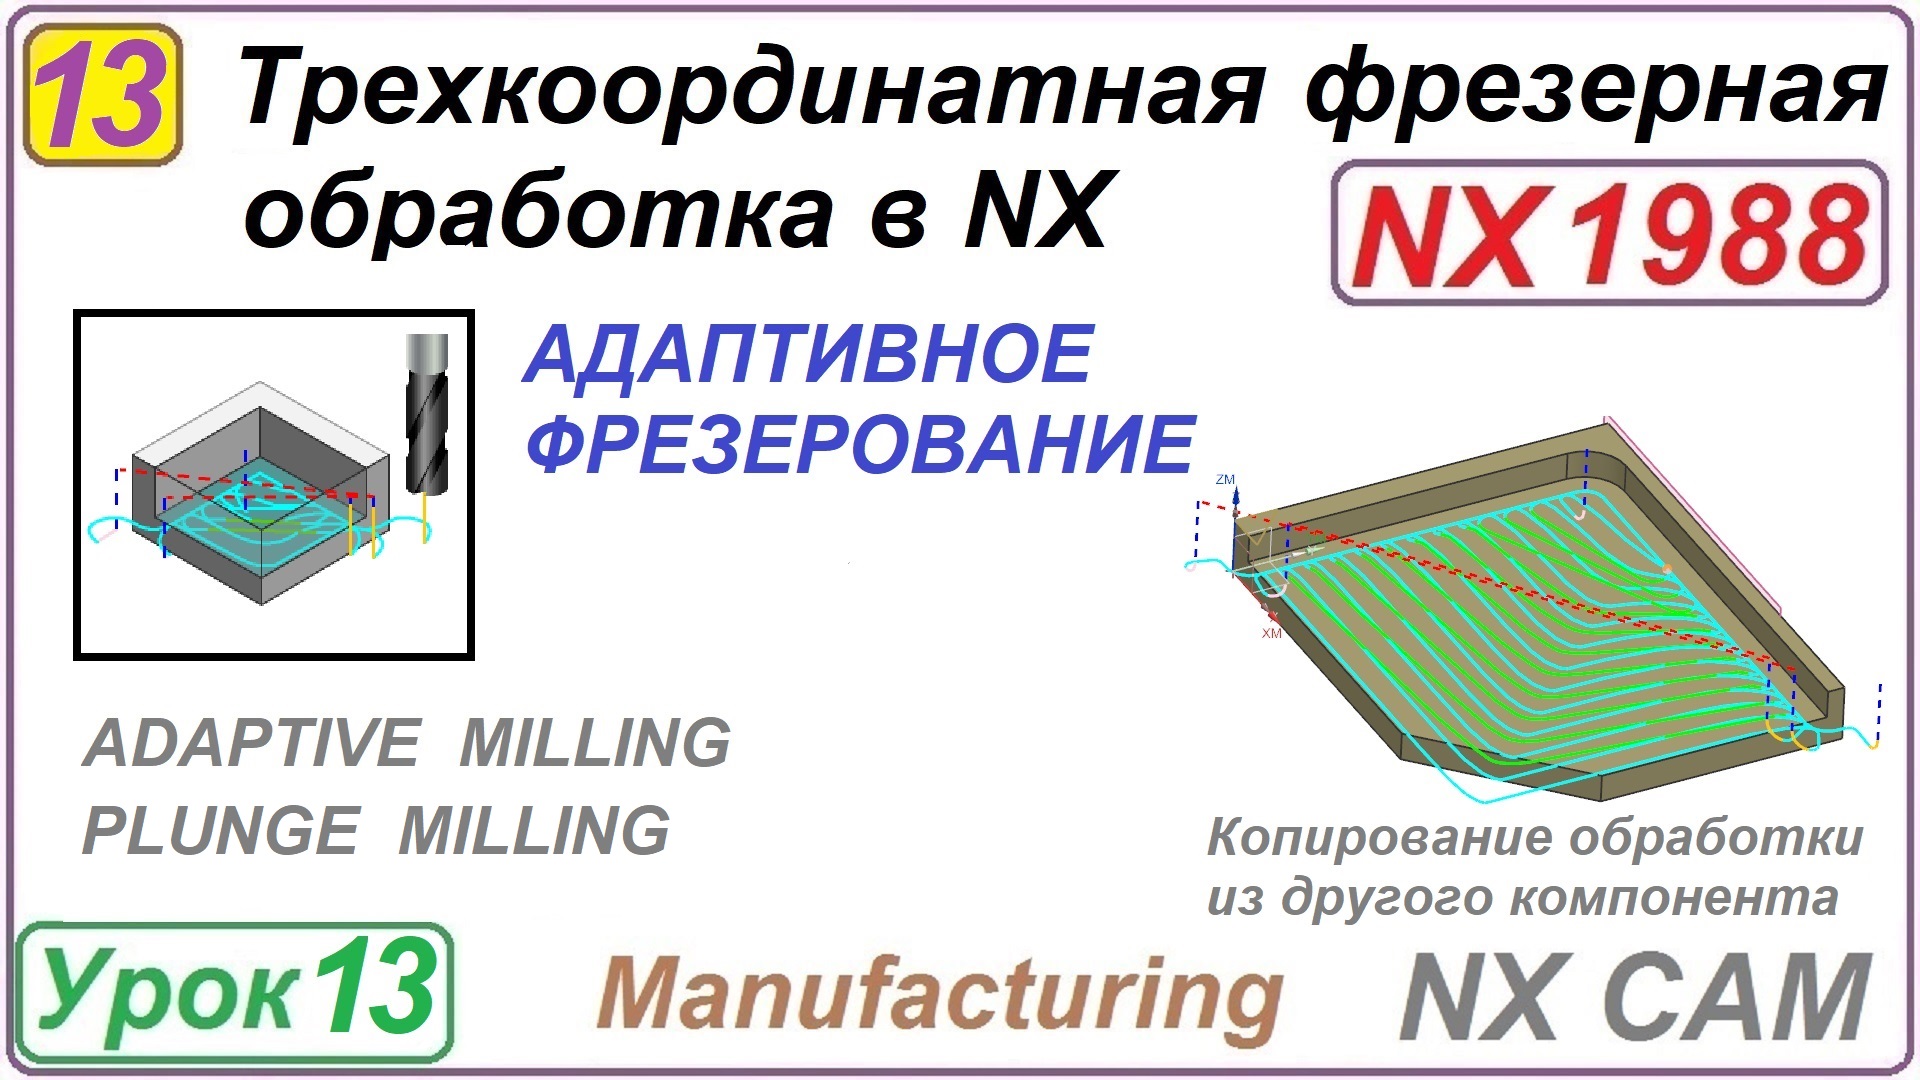 Трехкоординатная фрезерная обработка в NX. Урок 13. Адаптивное фрезерование